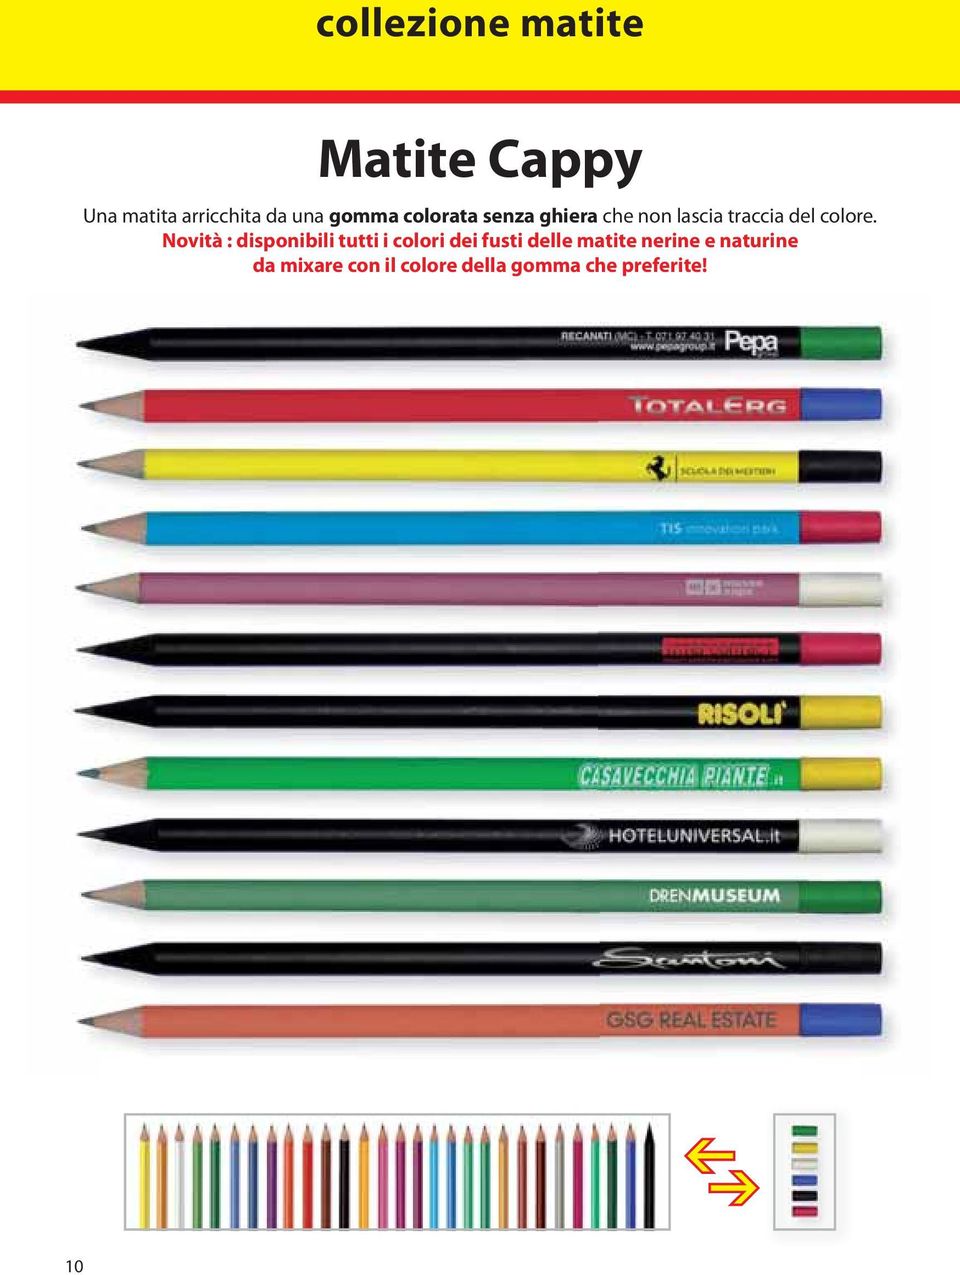 Novità : disponibili tutti i colori dei fusti delle matite